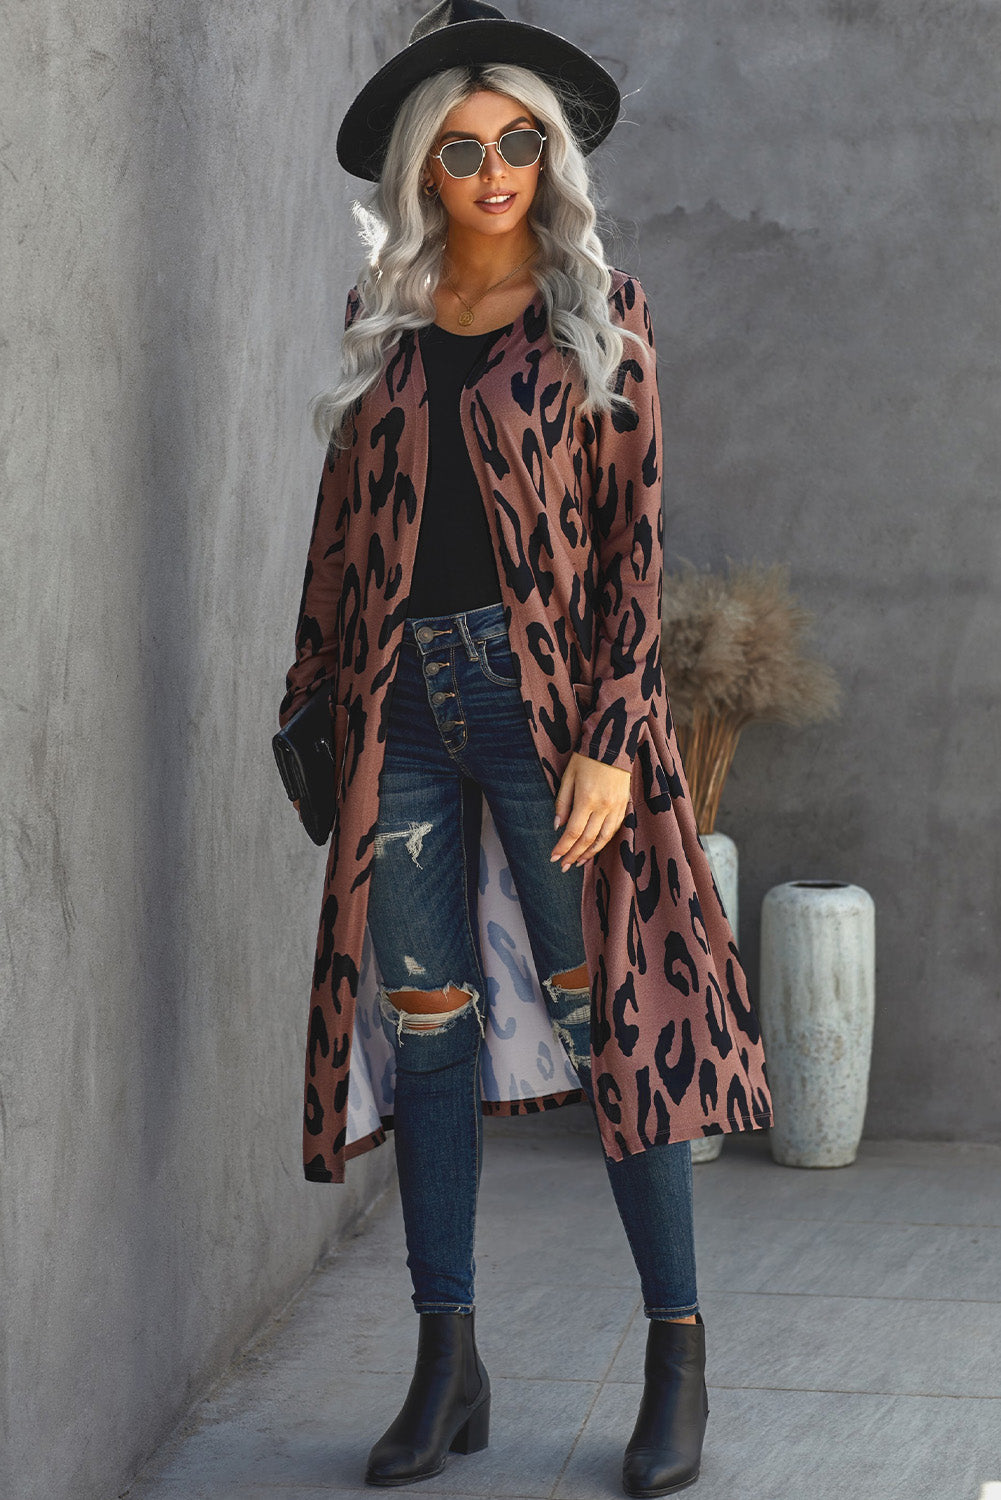 Women's Fashion knee Length Knitwear Long Sleeve Leopard Print Cardigan Sai Feel